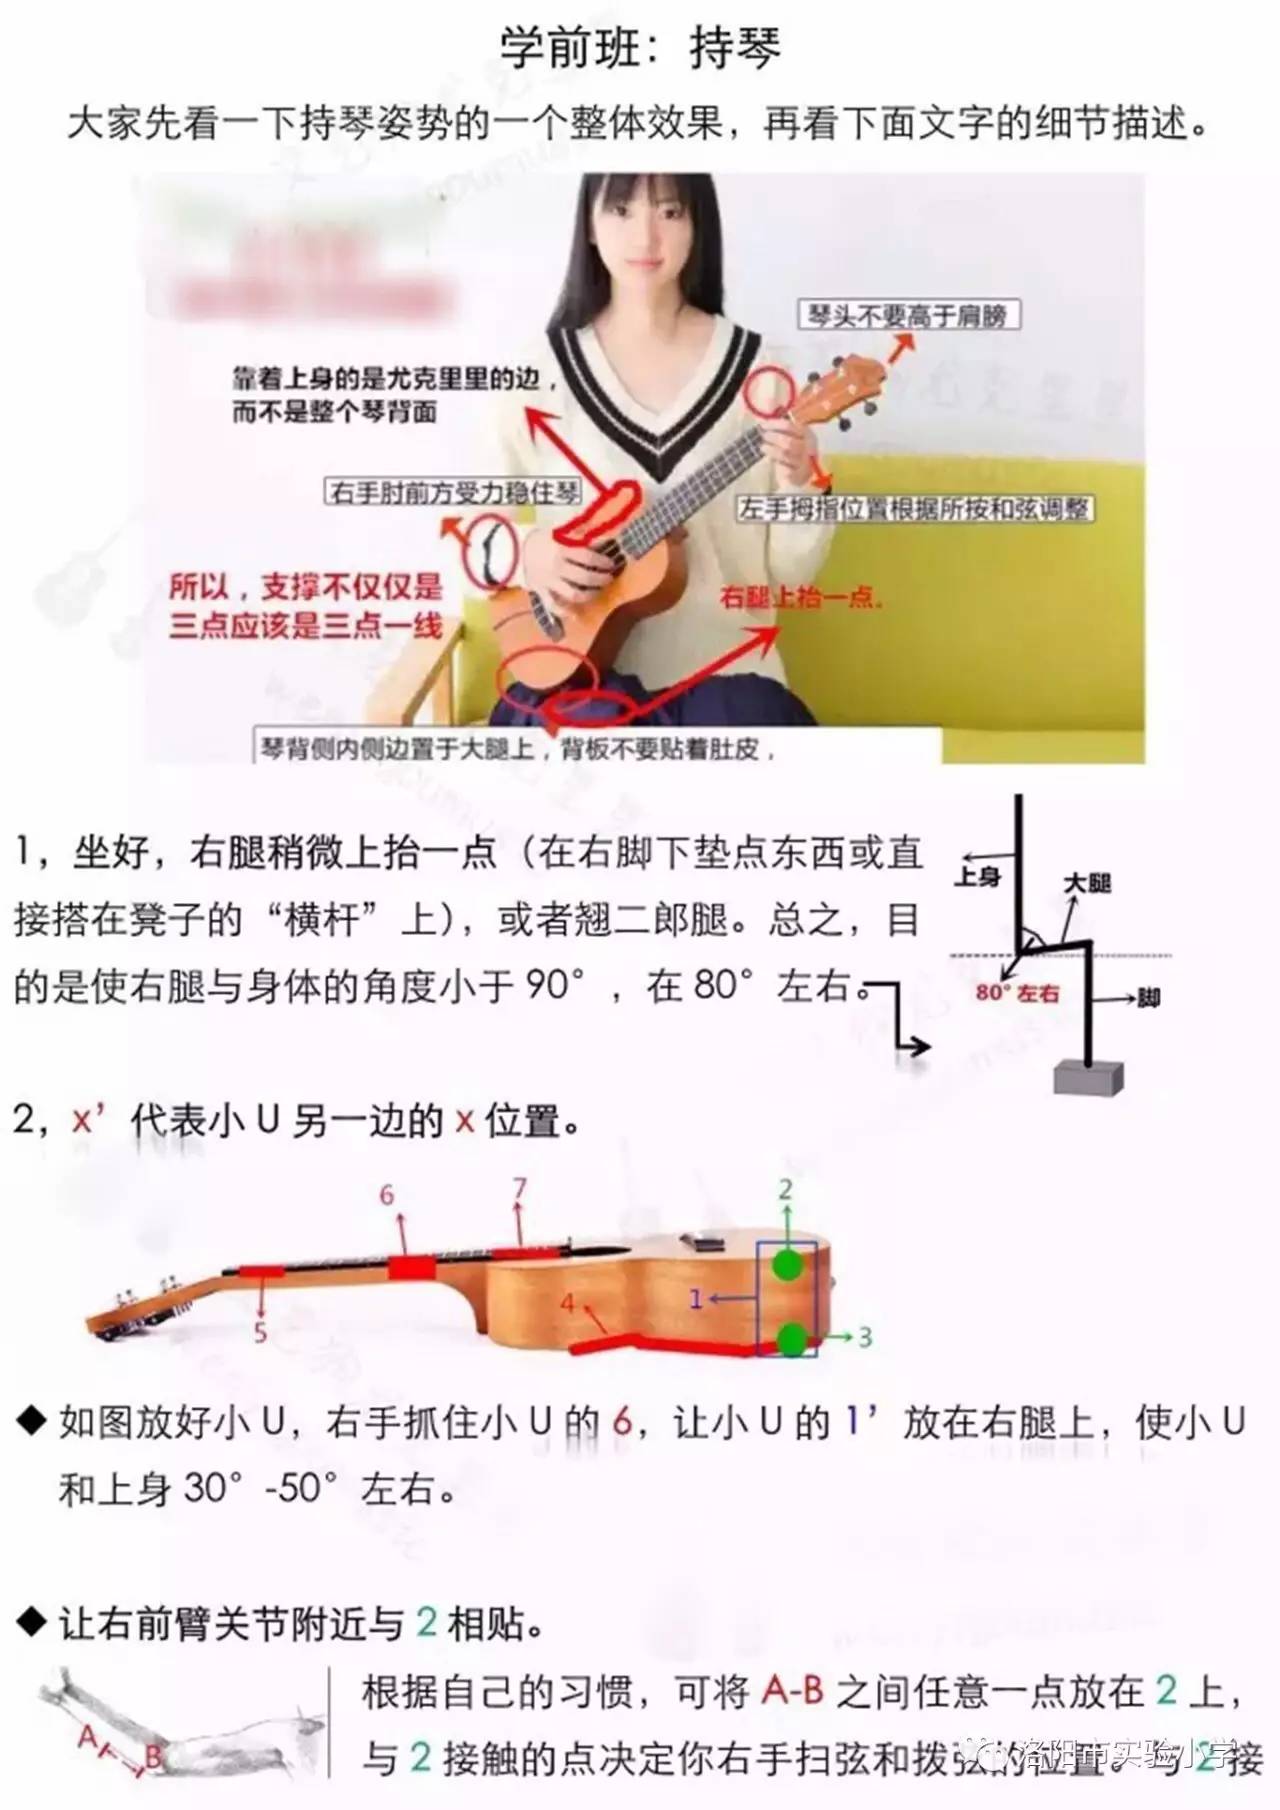 【魅力校园】学习乐器,尤克里里 ukulele学前班:持琴